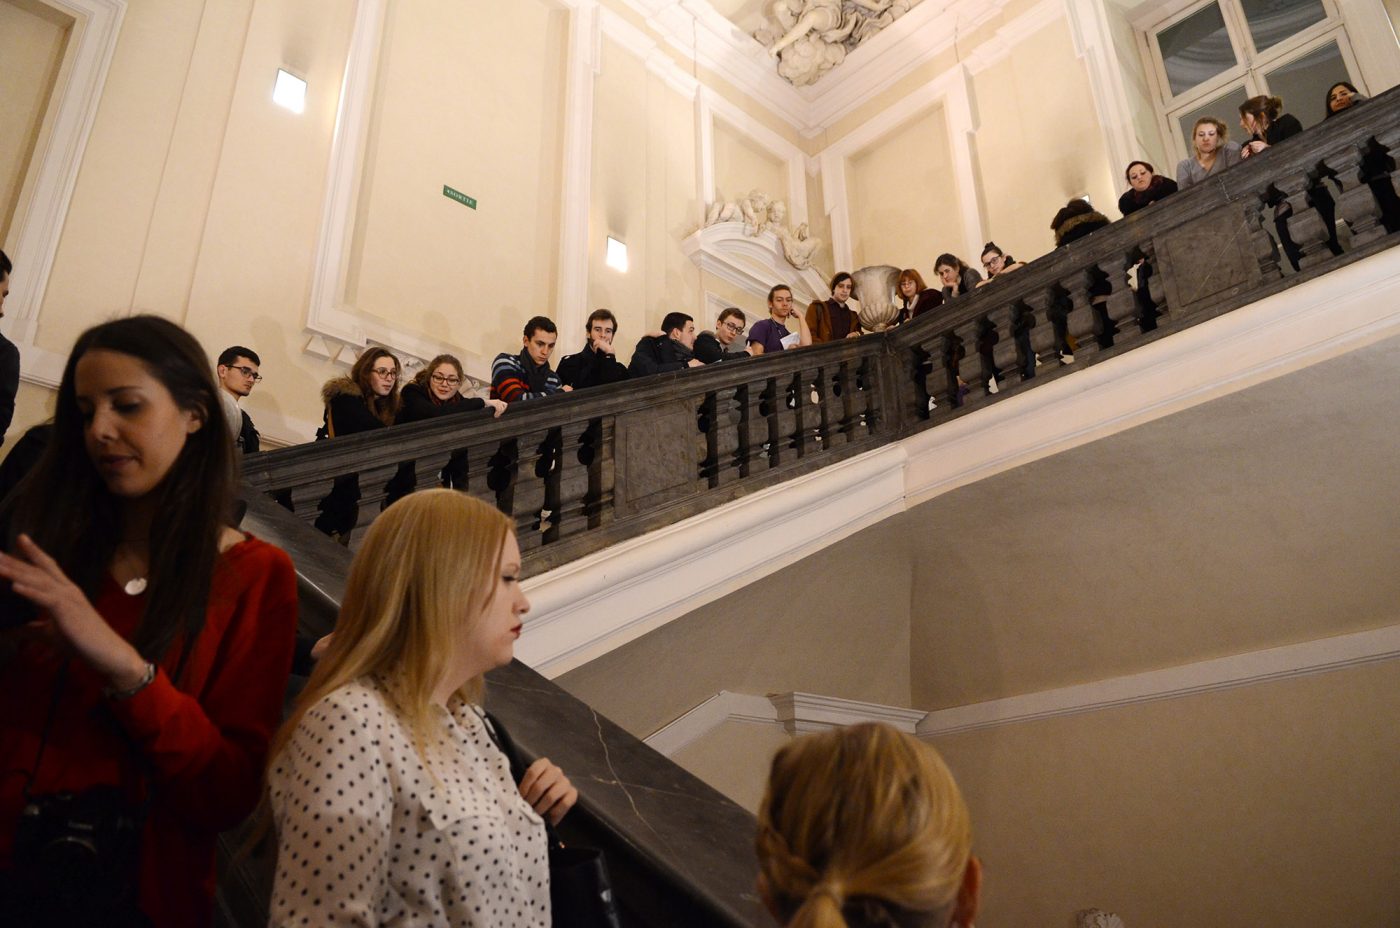 Gros succès pour la nocturne du Musée des Beaux-Arts de Lyon réservée aux étudiants. L'événement est fortement relayé par la communauté estudiantine sur Facebook.